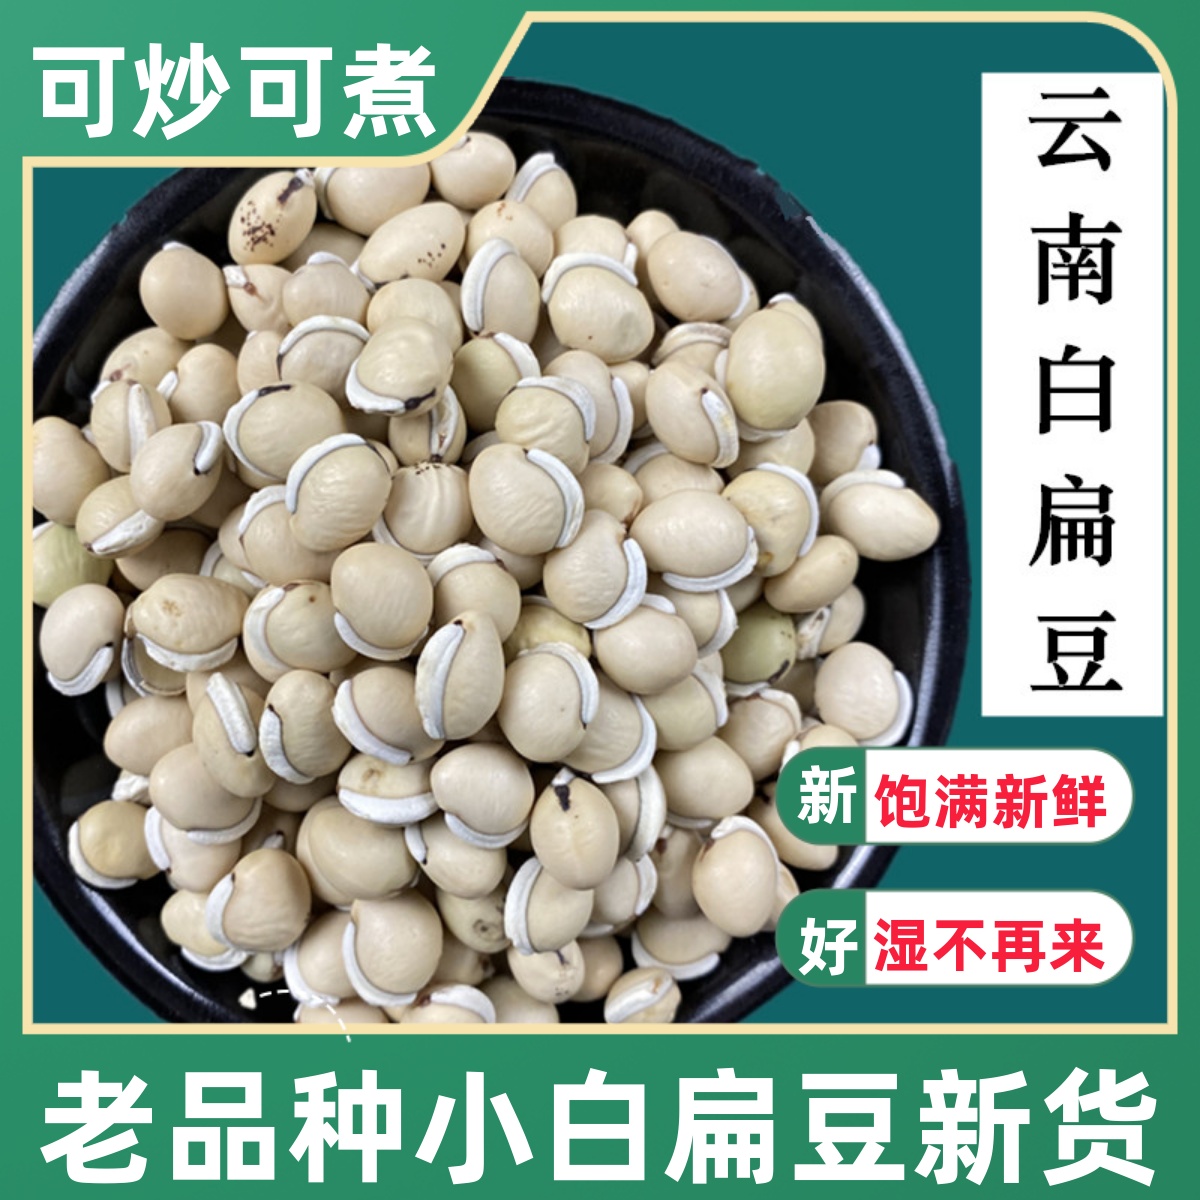 正宗白扁豆500g云南农家自种小扁豆干货药用煮粥祛湿中药材杂粮豆